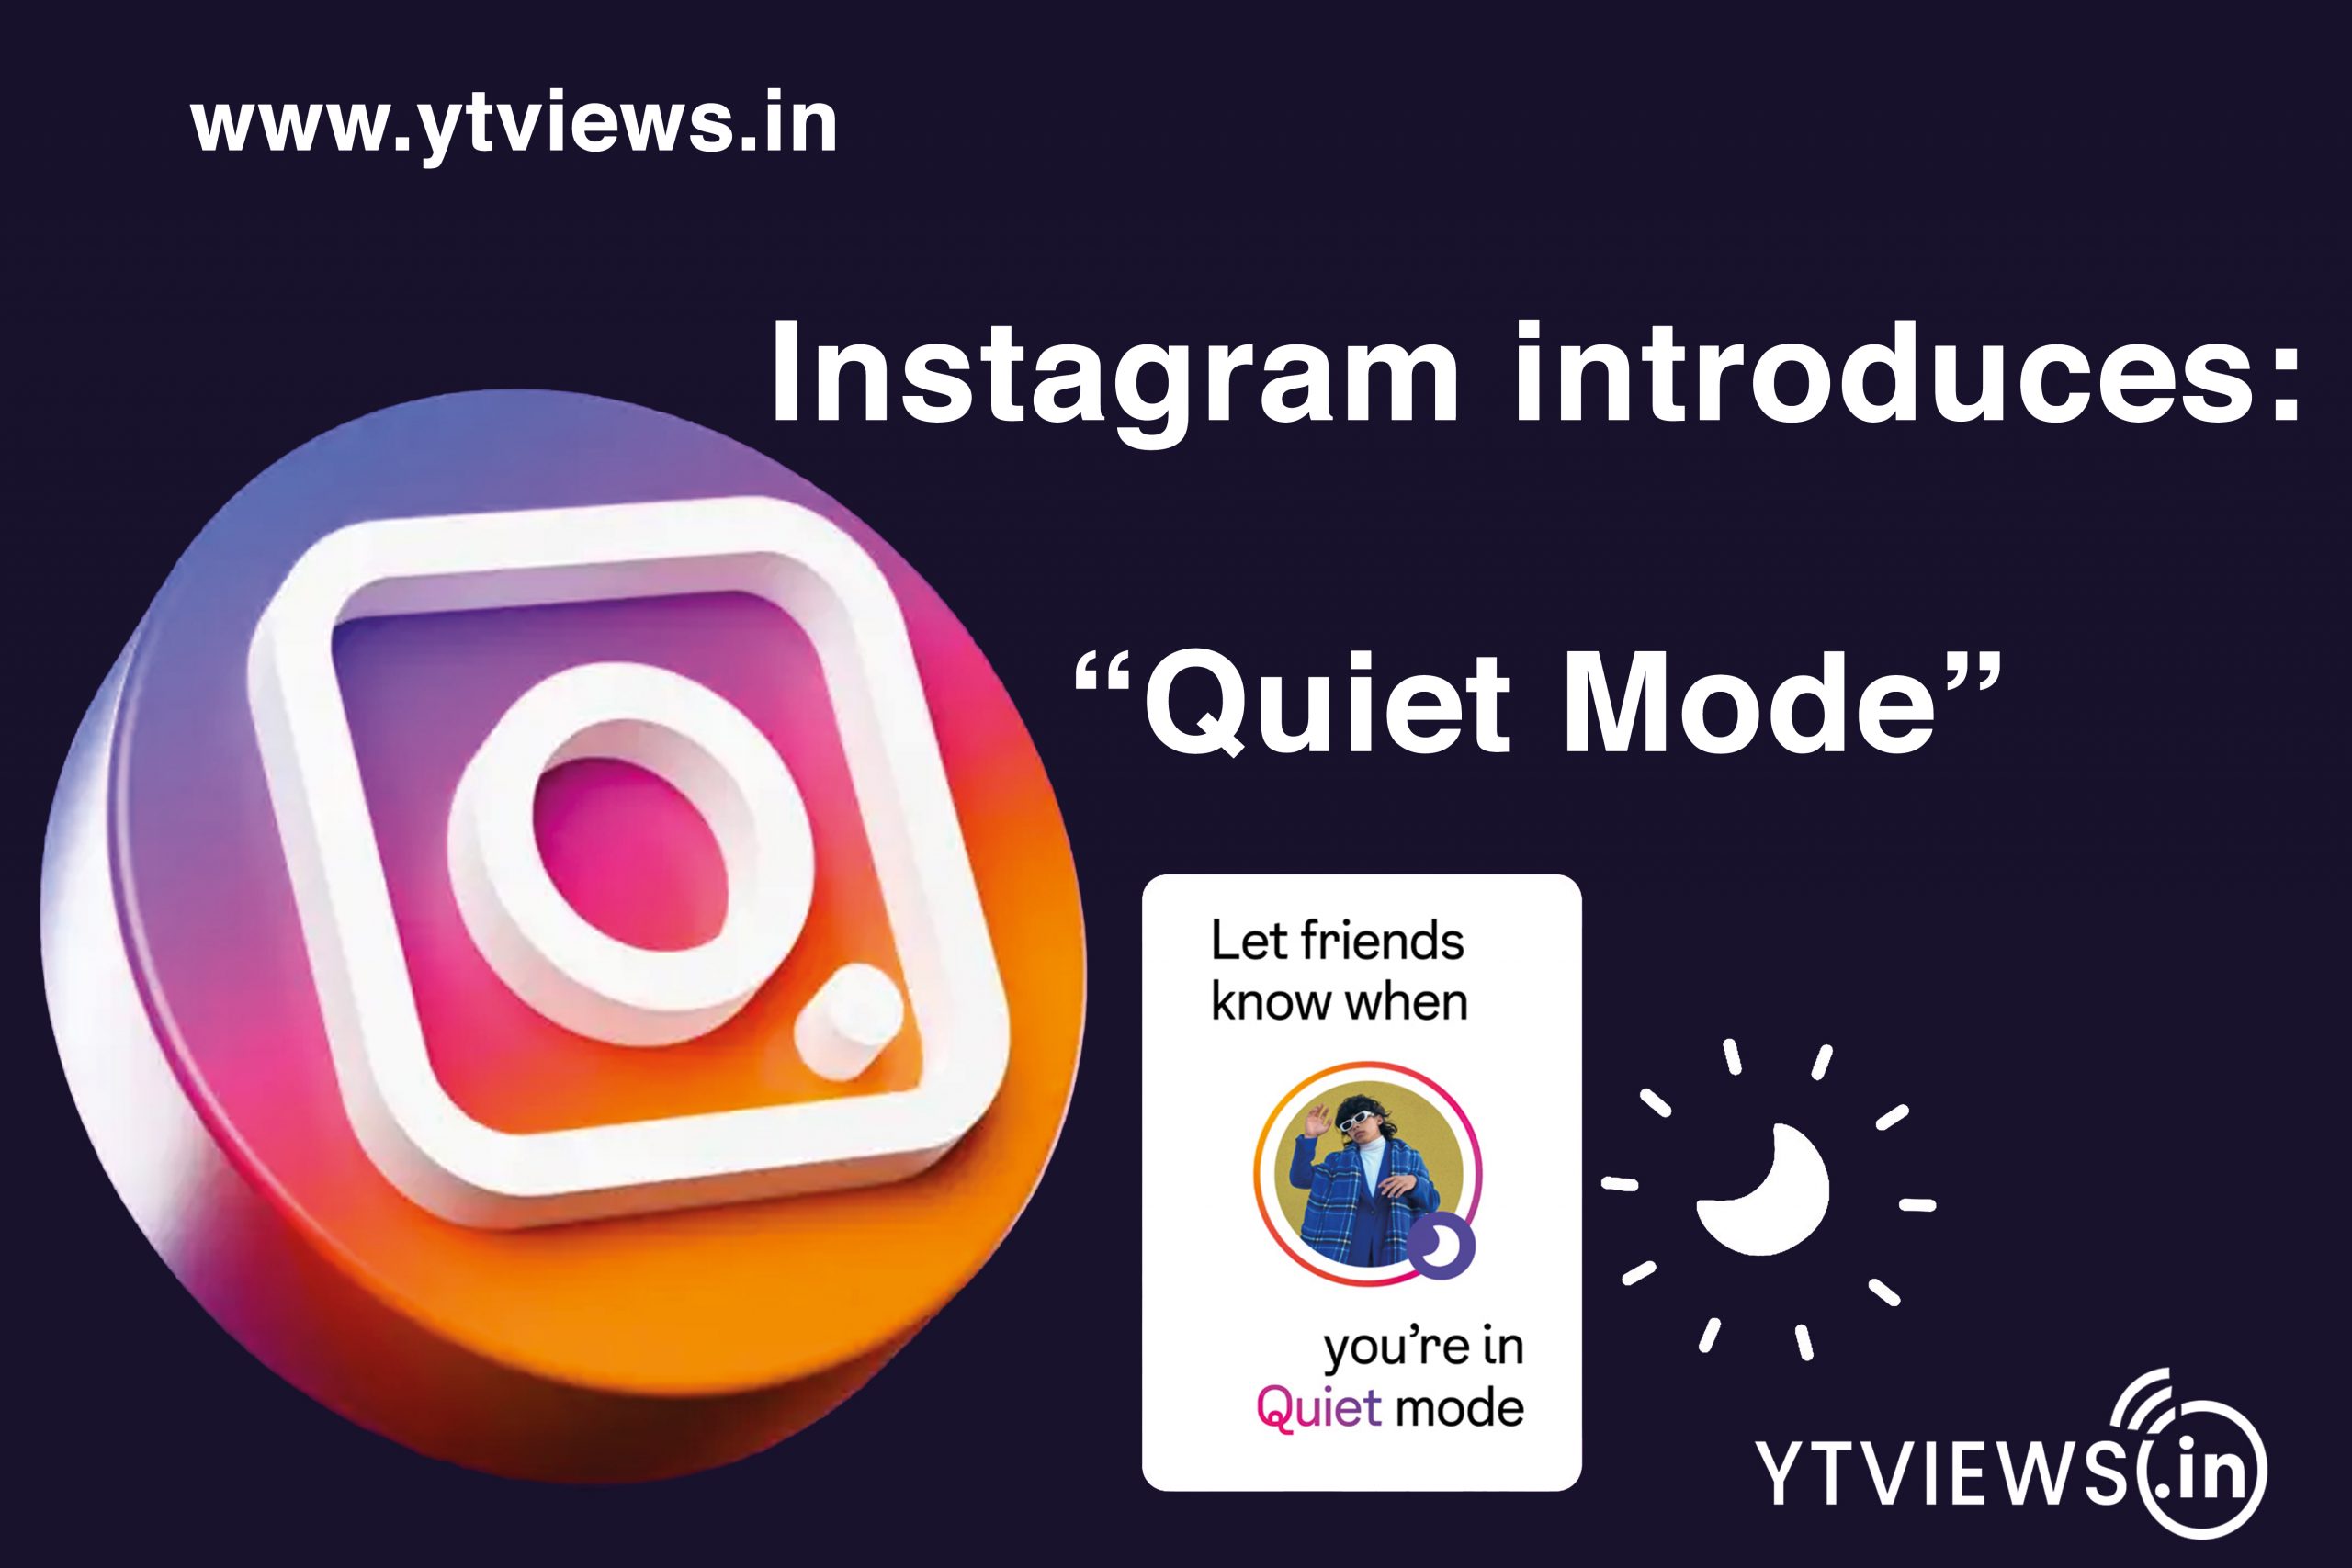 Instagram introduces ‘Quiet Mode’